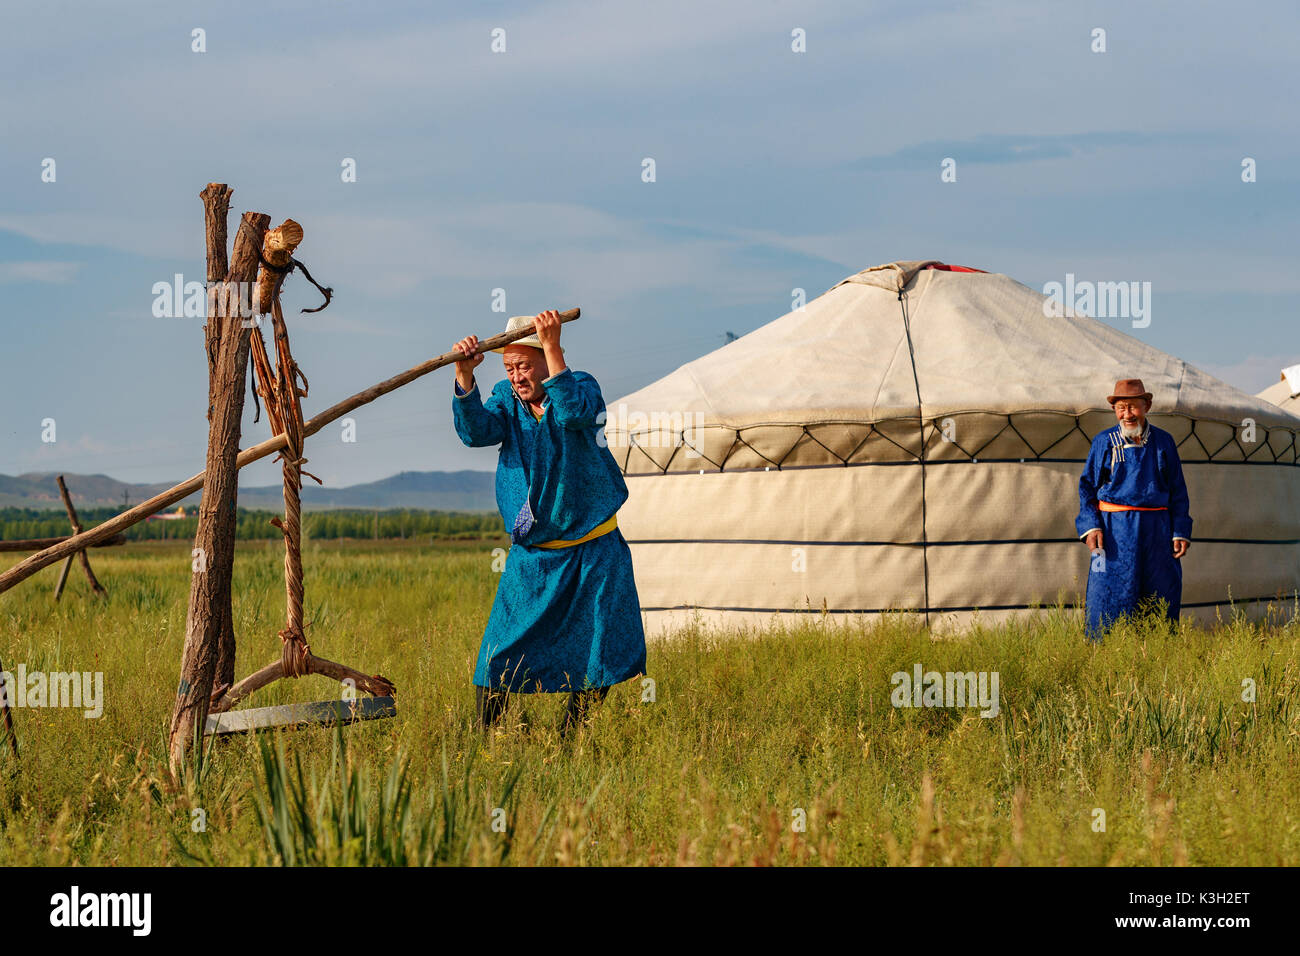 Mongolia Interna, China-July 26, 2017: tradizionalmente vestito vecchio mongola processo gli uomini la pelliccia di pecore in un modo tradizionale per ulteriori lavori di cuoio. Foto Stock